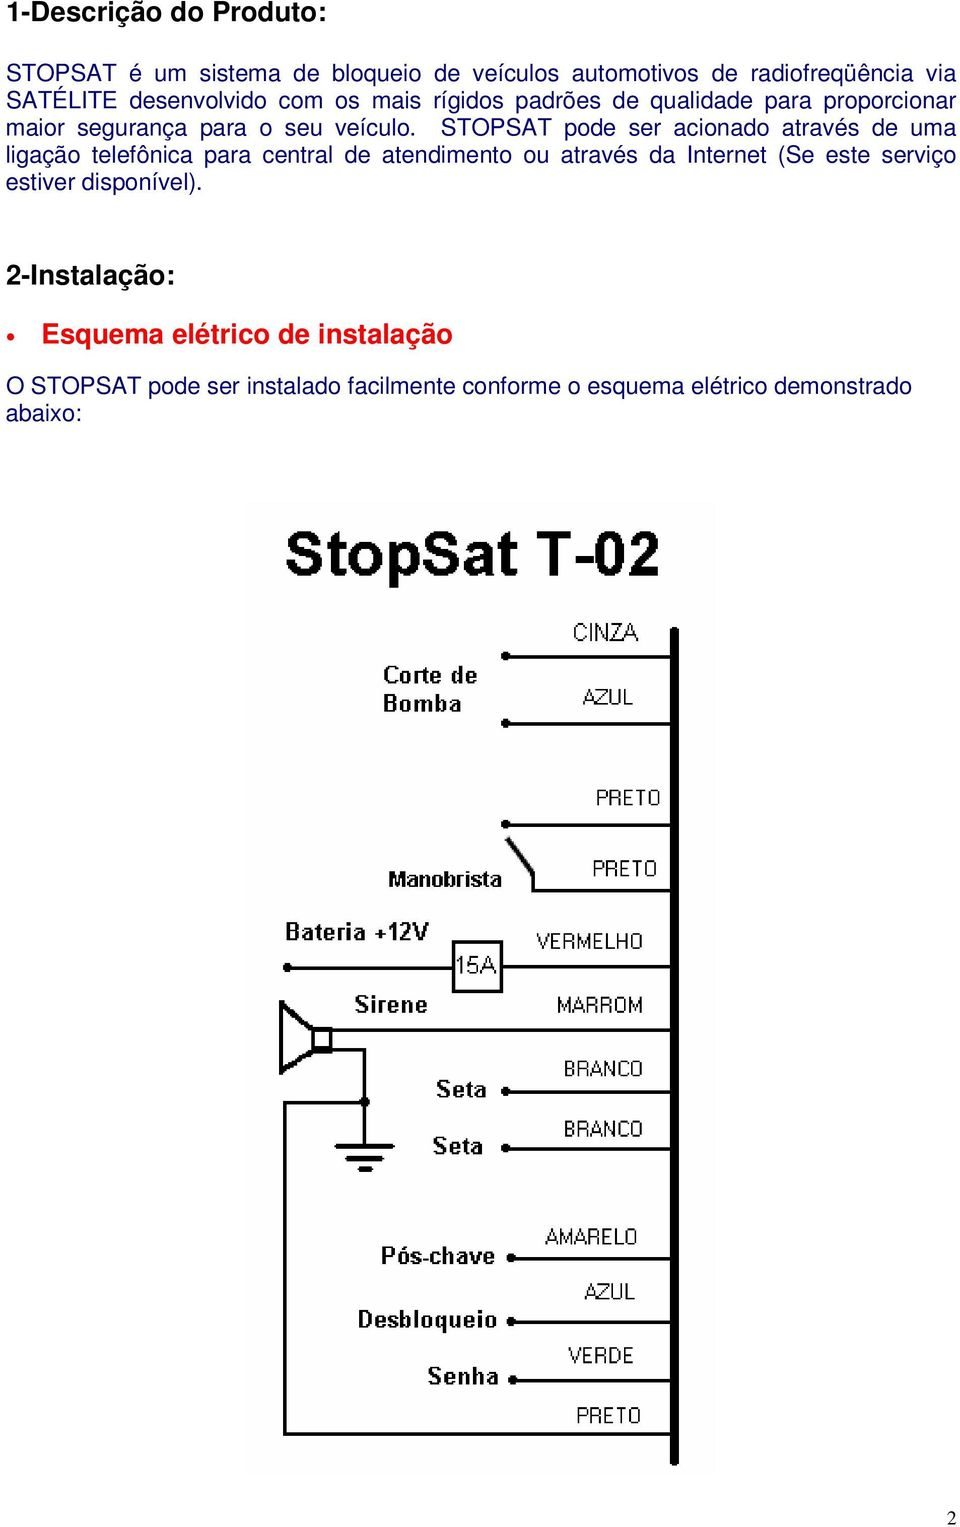 STOPSAT pode ser acionado através de uma ligação telefônica para central de atendimento ou através da Internet (Se este